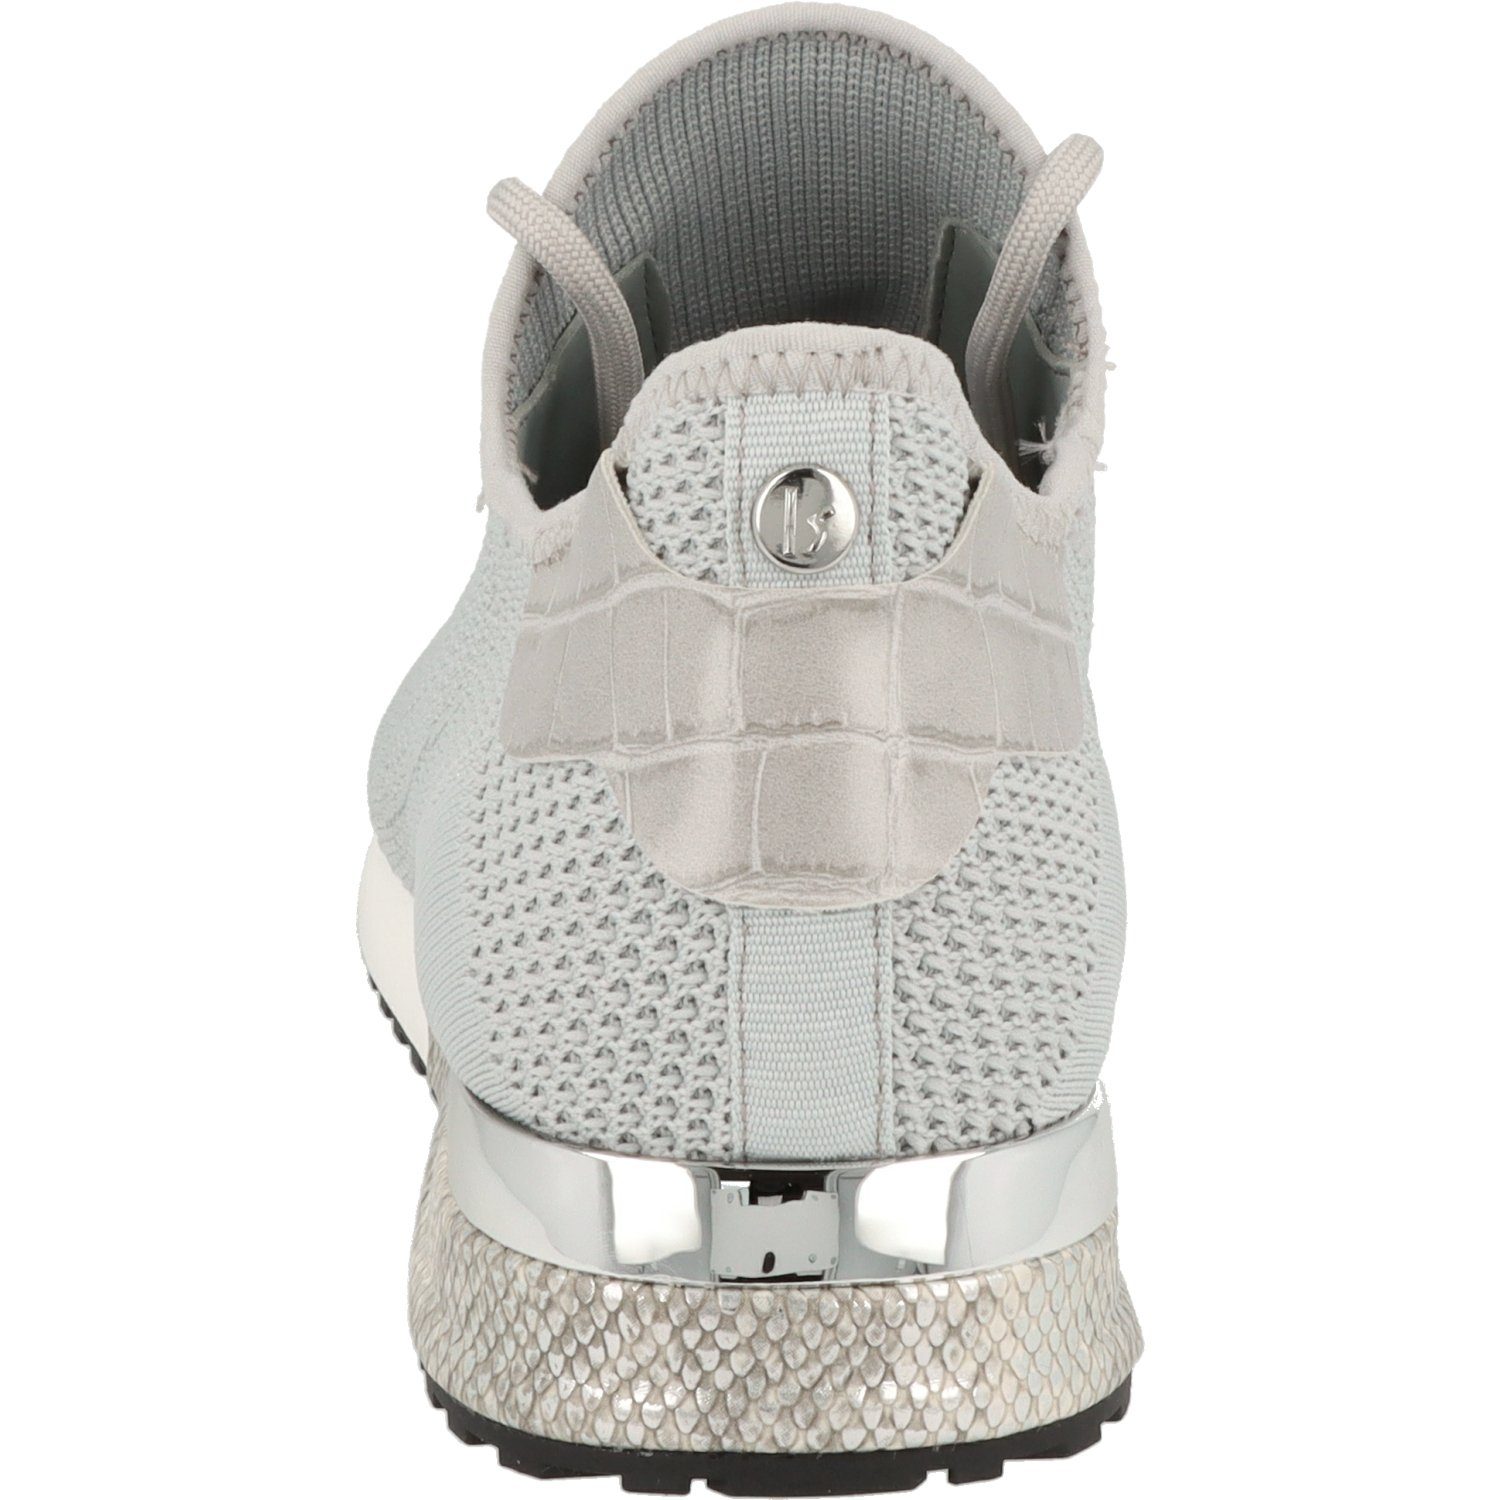 Schuhe Sneaker La Strada Woman Damen Schuhe Halbschuhe Schnürer Sneaker 1902517-4502 Lt.Grey Sneaker